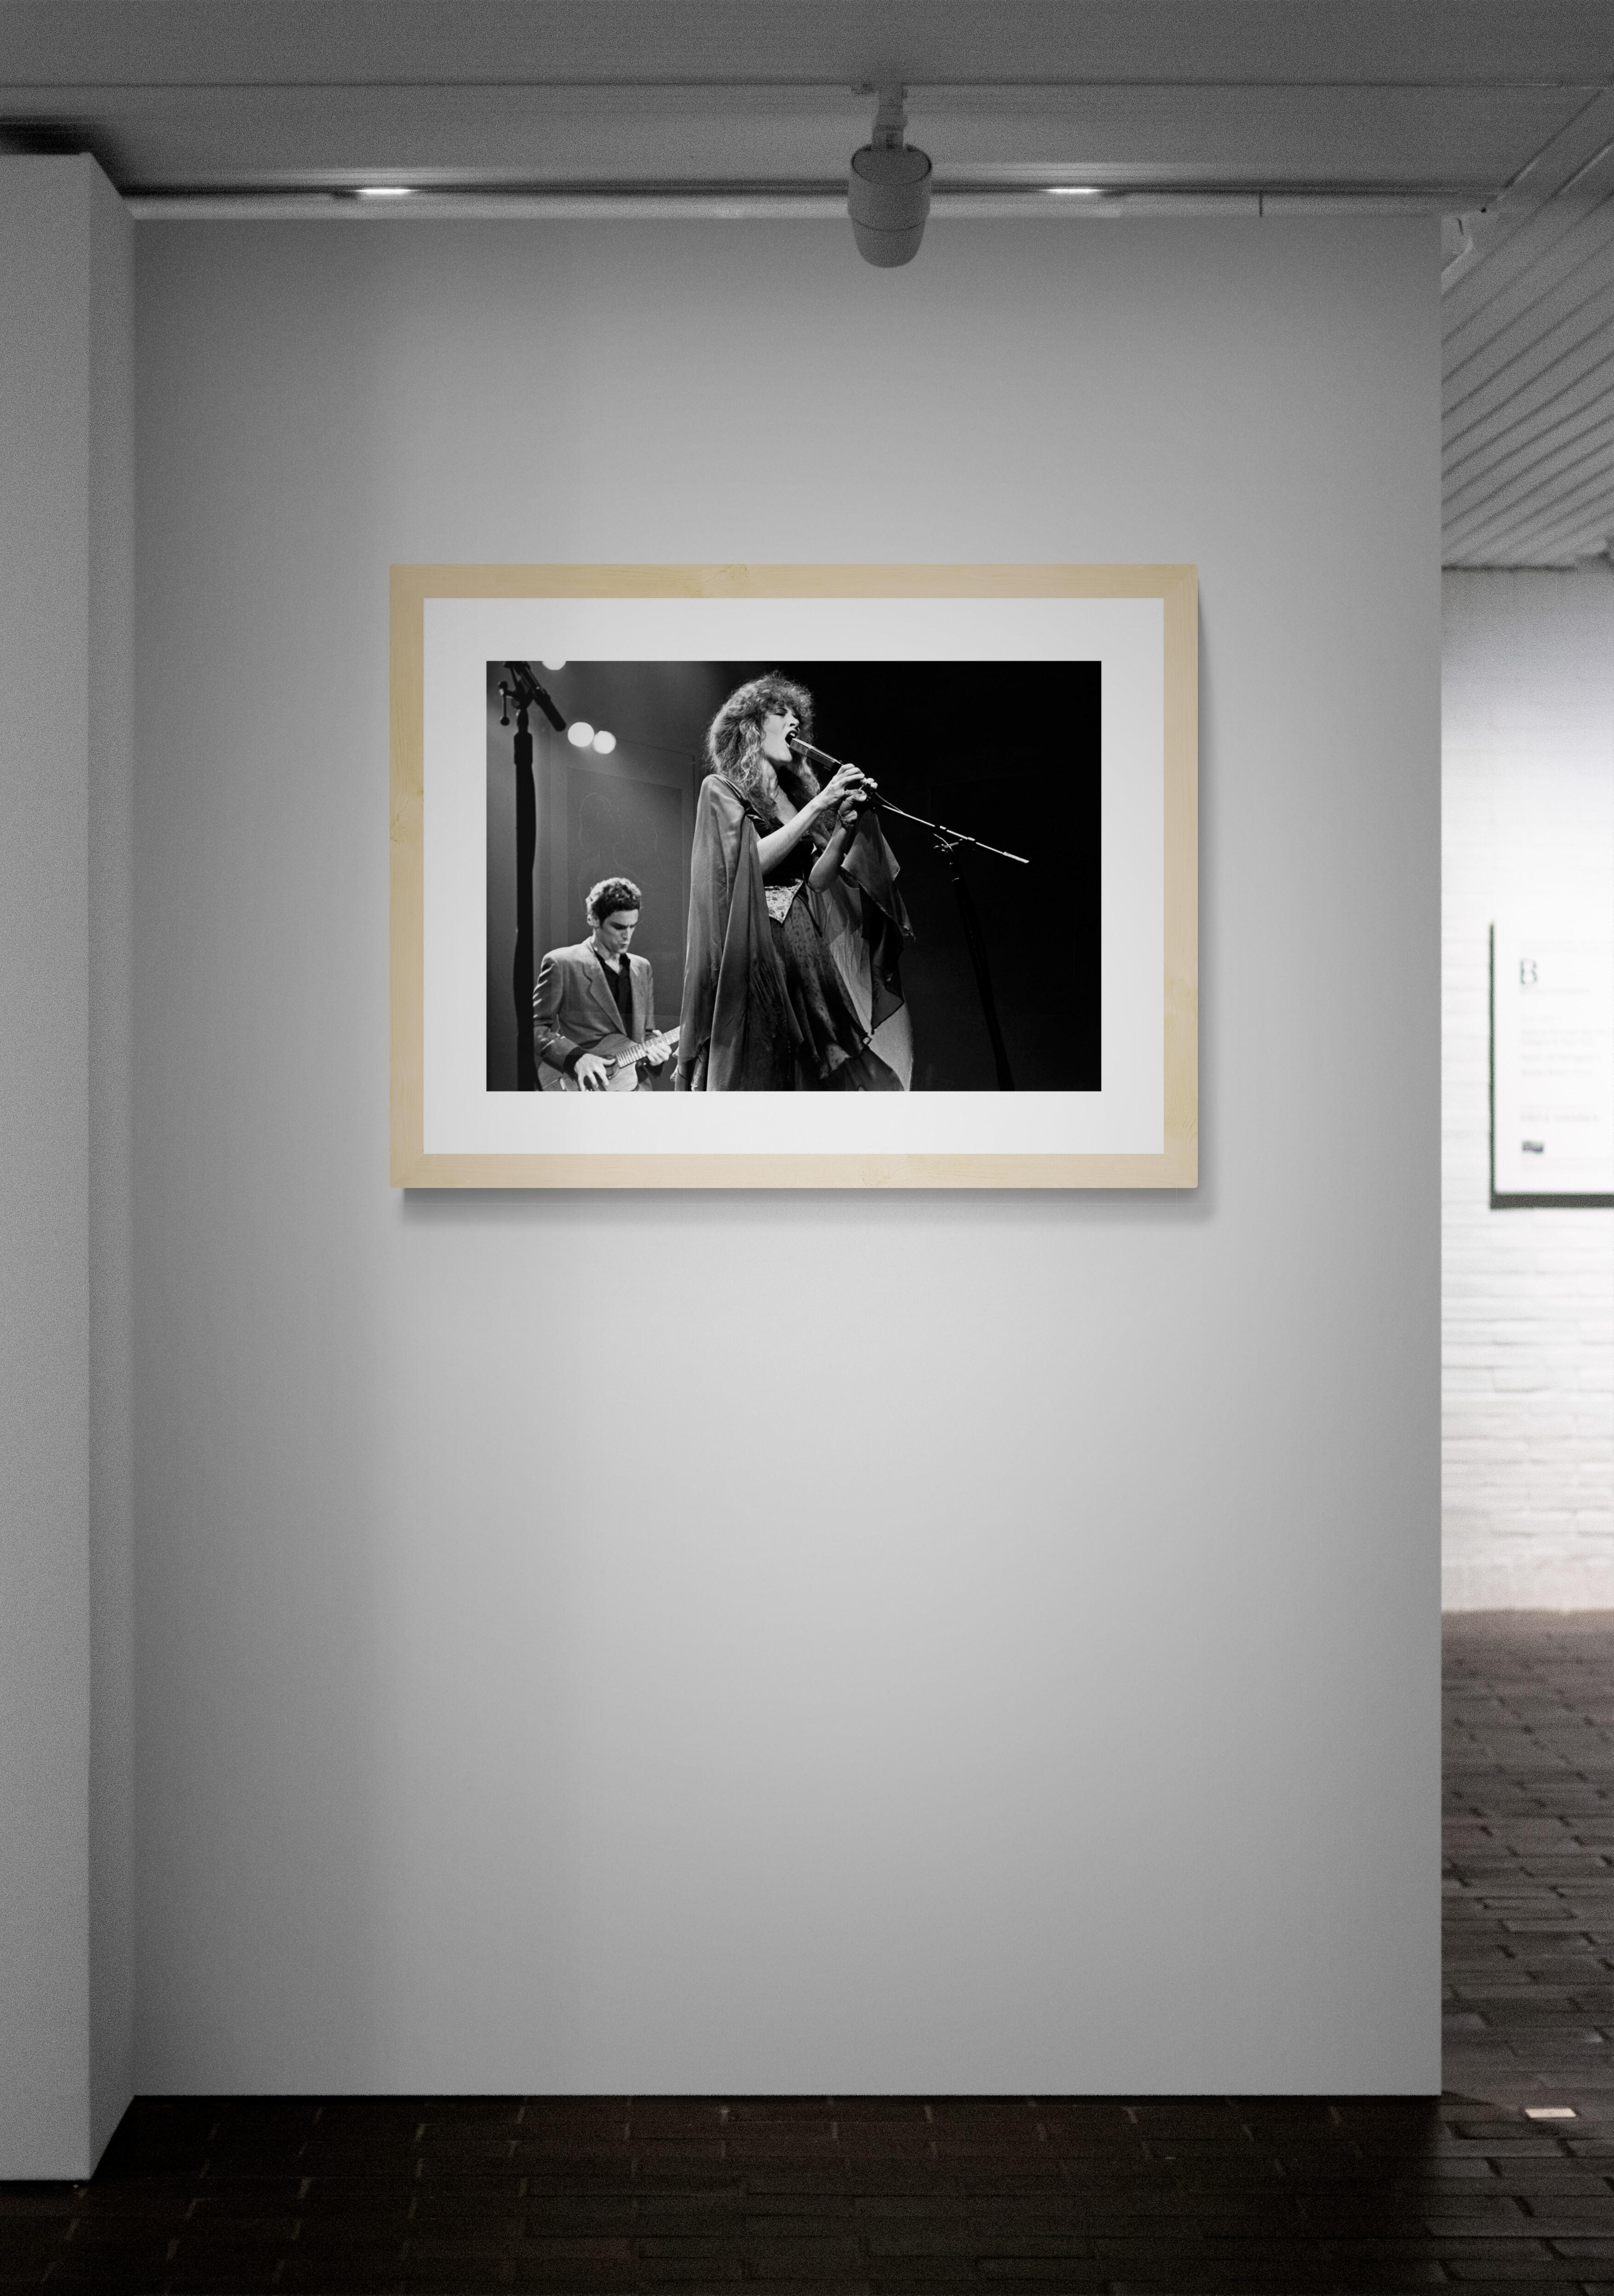 Titel: Stevie Nicks #6
Künstler: Richard E. Aaron
Nachlass-Edition: Handnummeriert mit Nachlassstempel im Rand, Signaturstempel auf der Rückseite, Pigmentdruck auf Hahnemühle Photo Rag Pearl, 100% Baumwollpapier, Kunstdruckpapier. Autorisierte